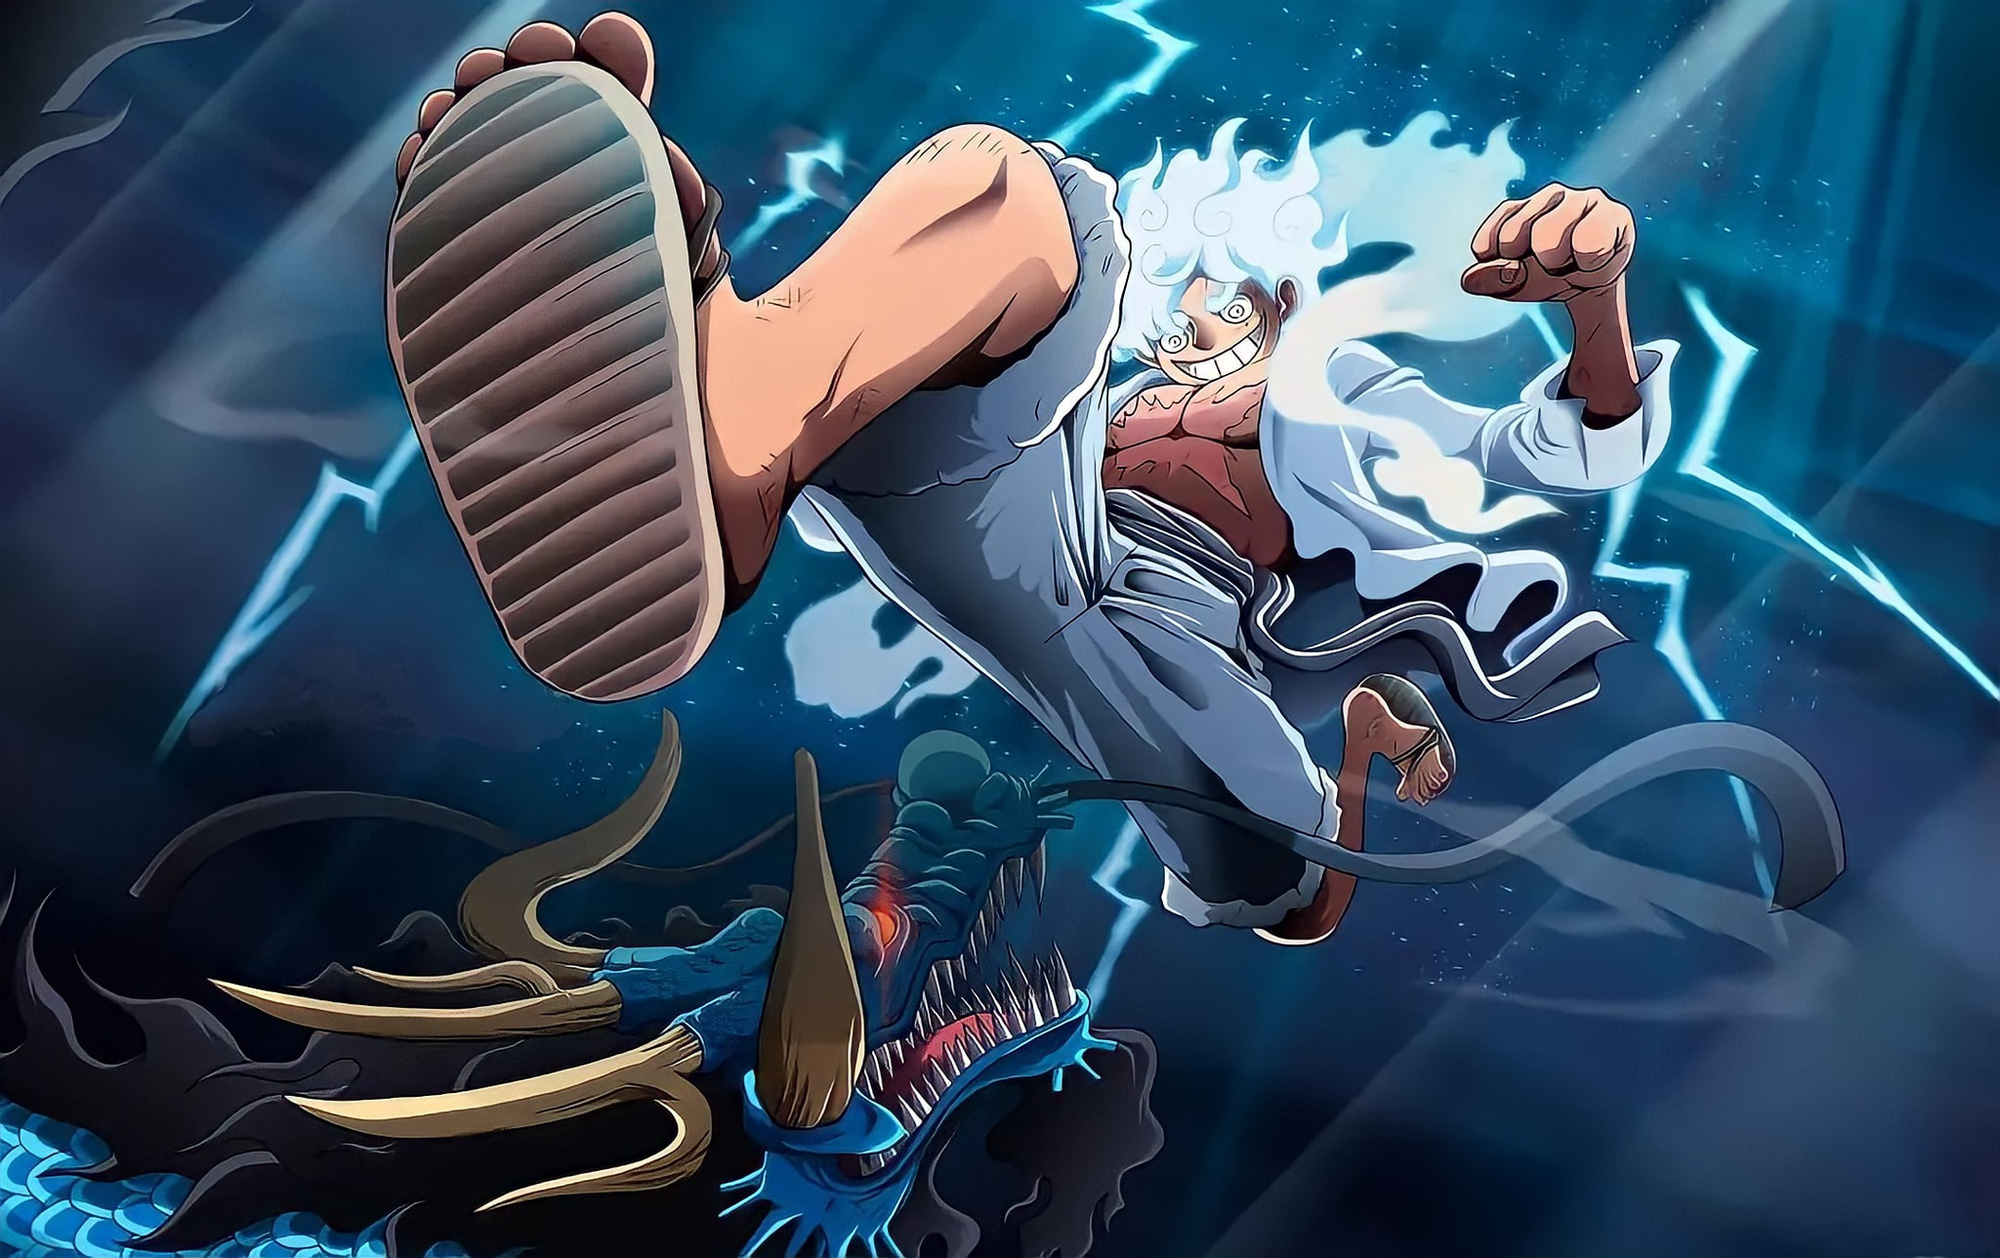 Luffy thức tỉnh: Hãy trải nghiệm cảm giác hồi hộp khi Luffy thức tỉnh và khai thông sức mạnh tiềm ẩn bên trong! Đón xem hình ảnh đầy kịch tính và đầy tinh thần đối với Luffy thức tỉnh.